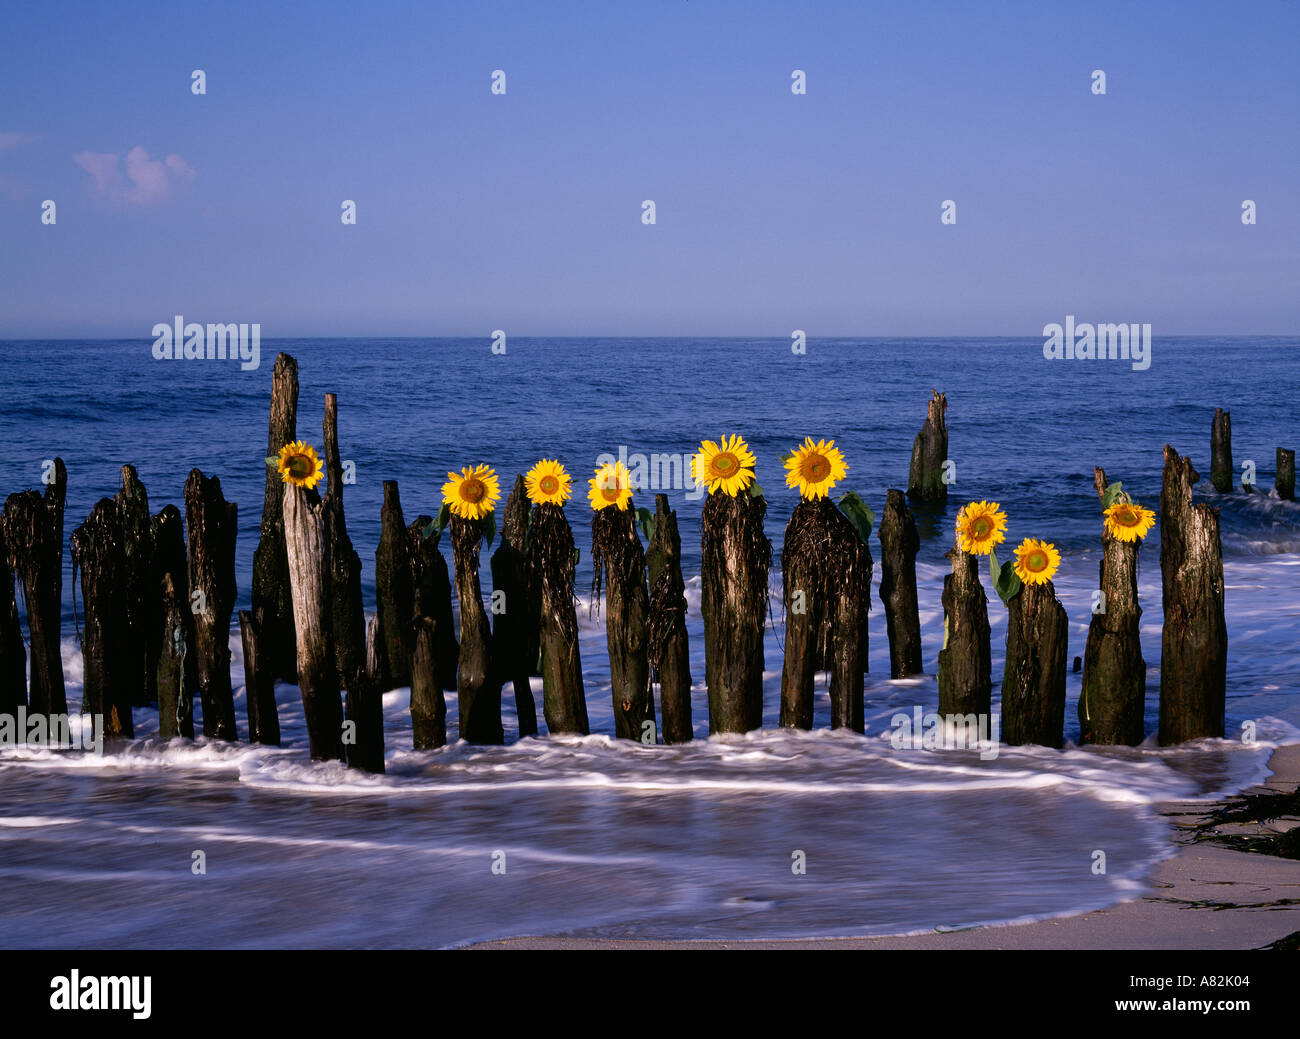 Girasoles colocados sobre postes de madera en el Océano Atlántico en la playa de Southampton, Long Island, Nueva York, EE.UU. Foto de stock